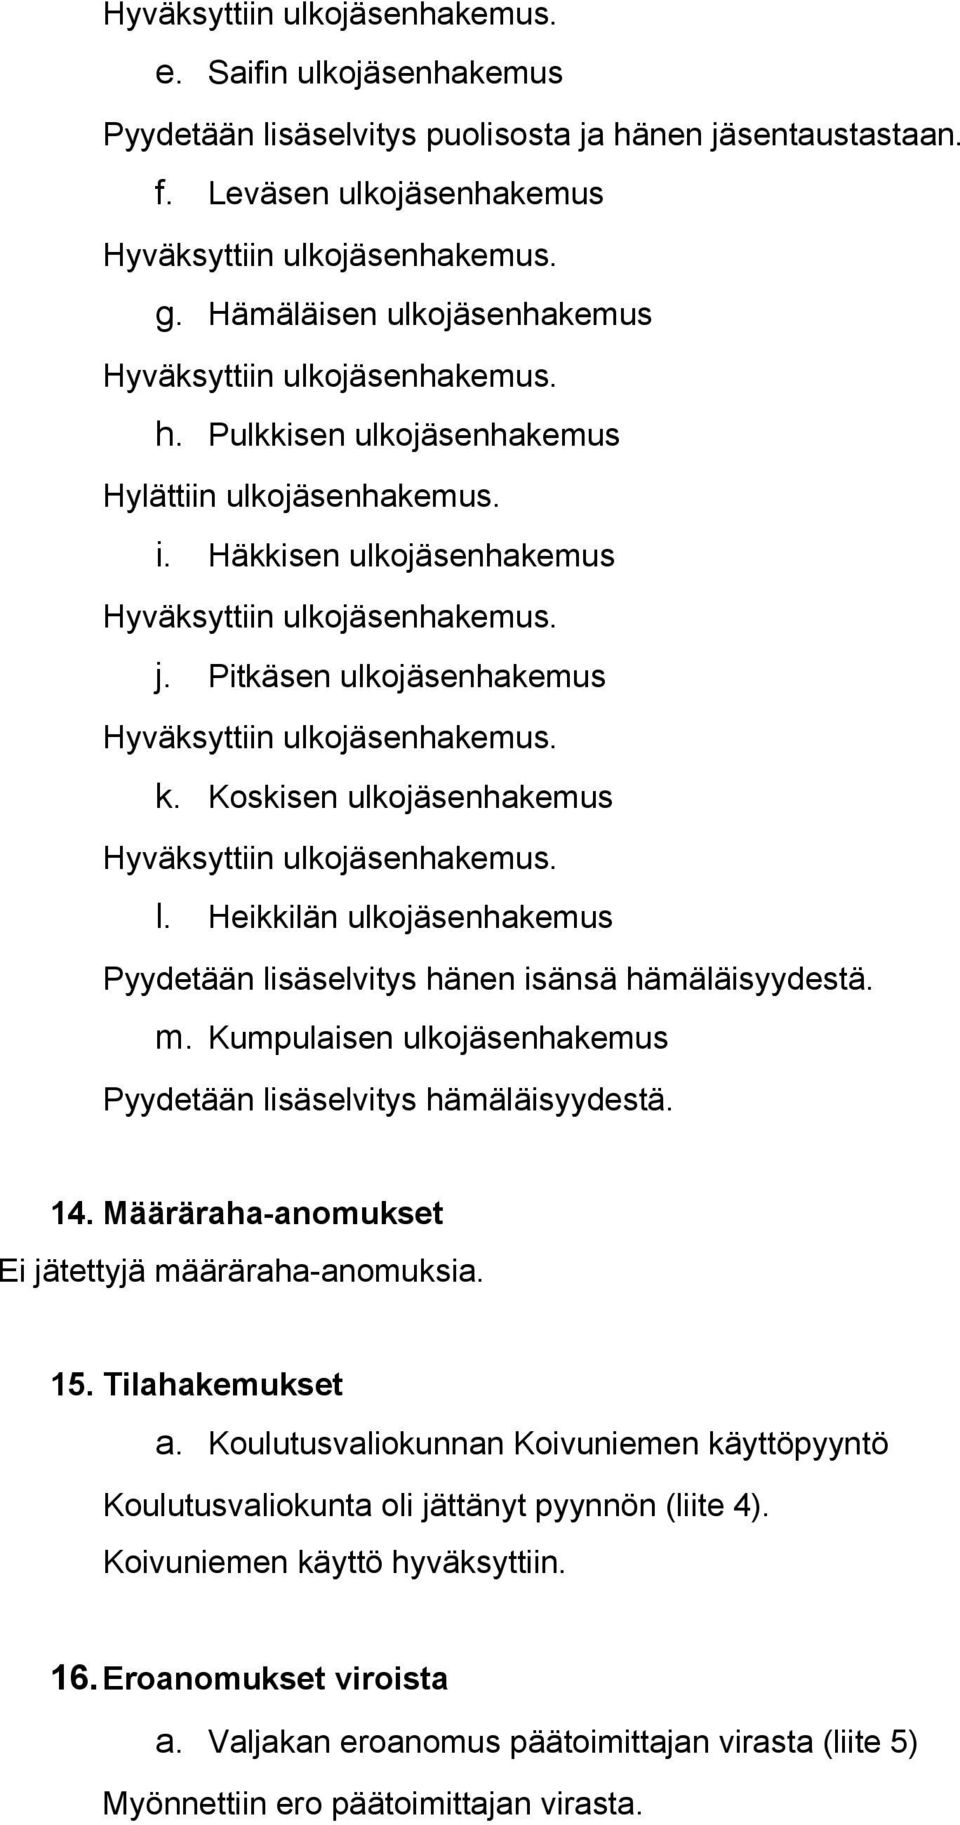 Heikkilän ulkojäsenhakemus Pyydetään lisäselvitys hänen isänsä hämäläisyydestä. m. Kumpulaisen ulkojäsenhakemus Pyydetään lisäselvitys hämäläisyydestä. 14.